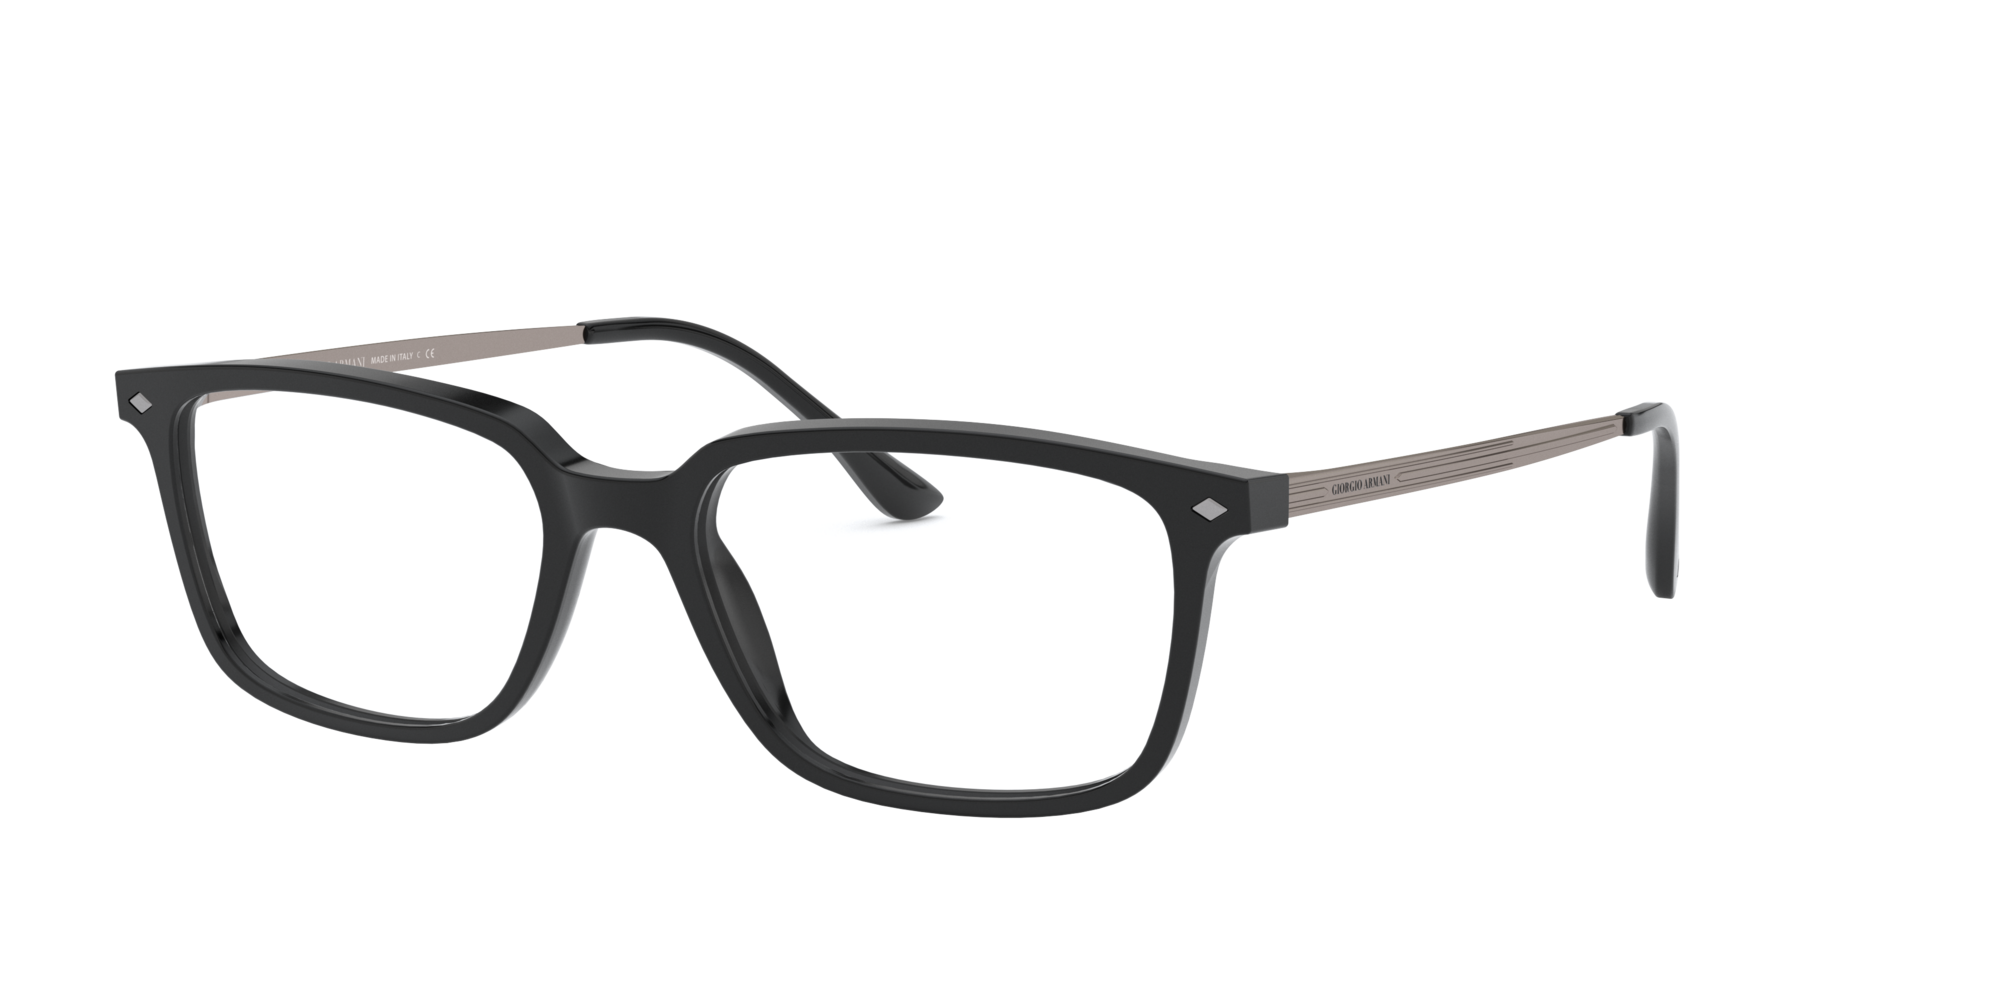 GIORGIO ARMANI AR7243-U 5988 53mm Eyewear FRAMES Eyeglasses RX Optical  Glasses - GGV Eyewear